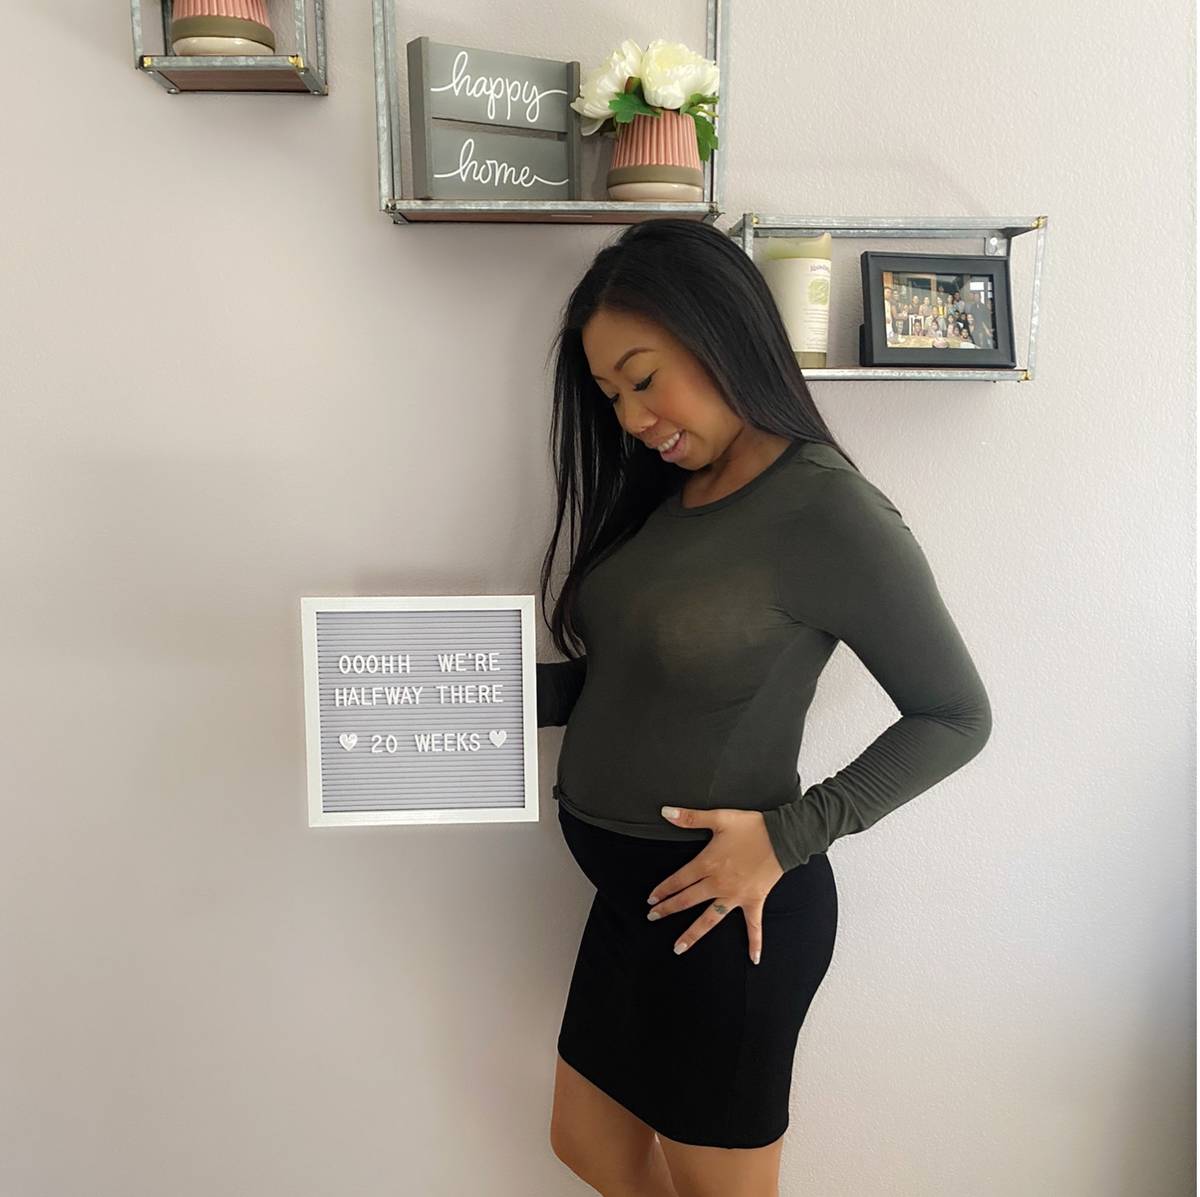 Diane Chantapanya ha pasado más de dos semanas de su primer embarazo sola, con su marido en au ...